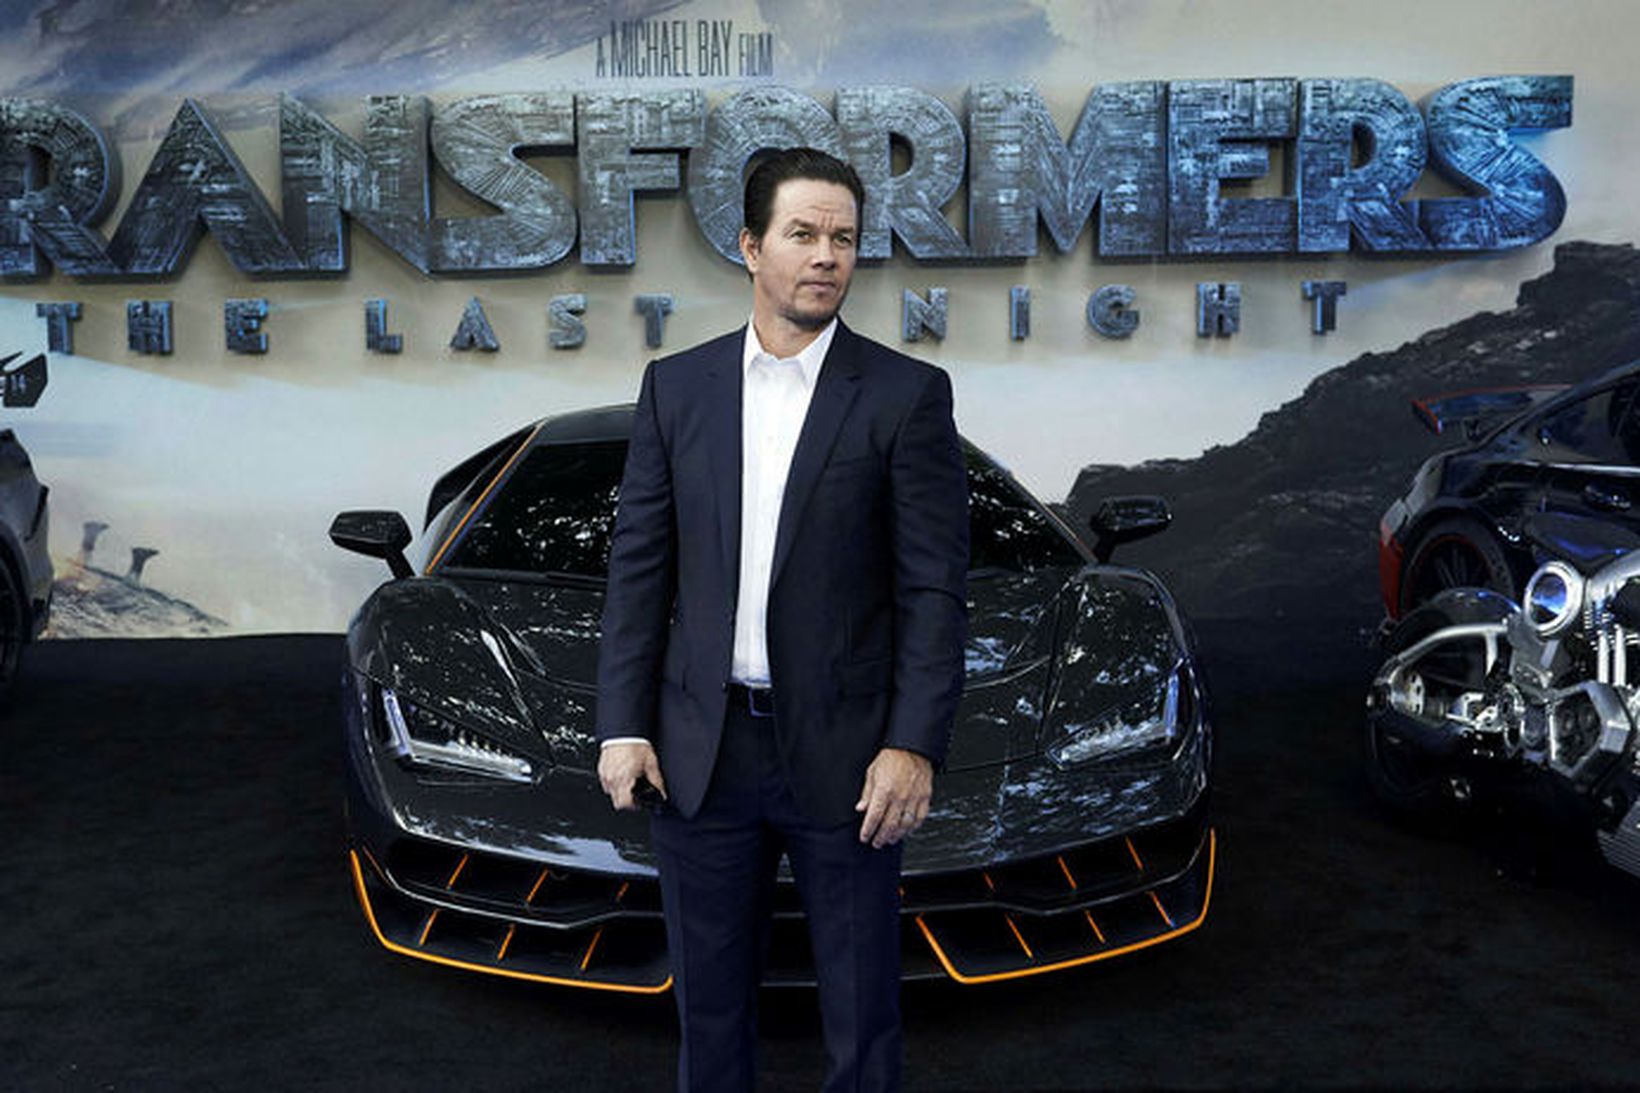 Mark Wahlberg fékk tilnefningu fyrir leik sinn í Transformers.